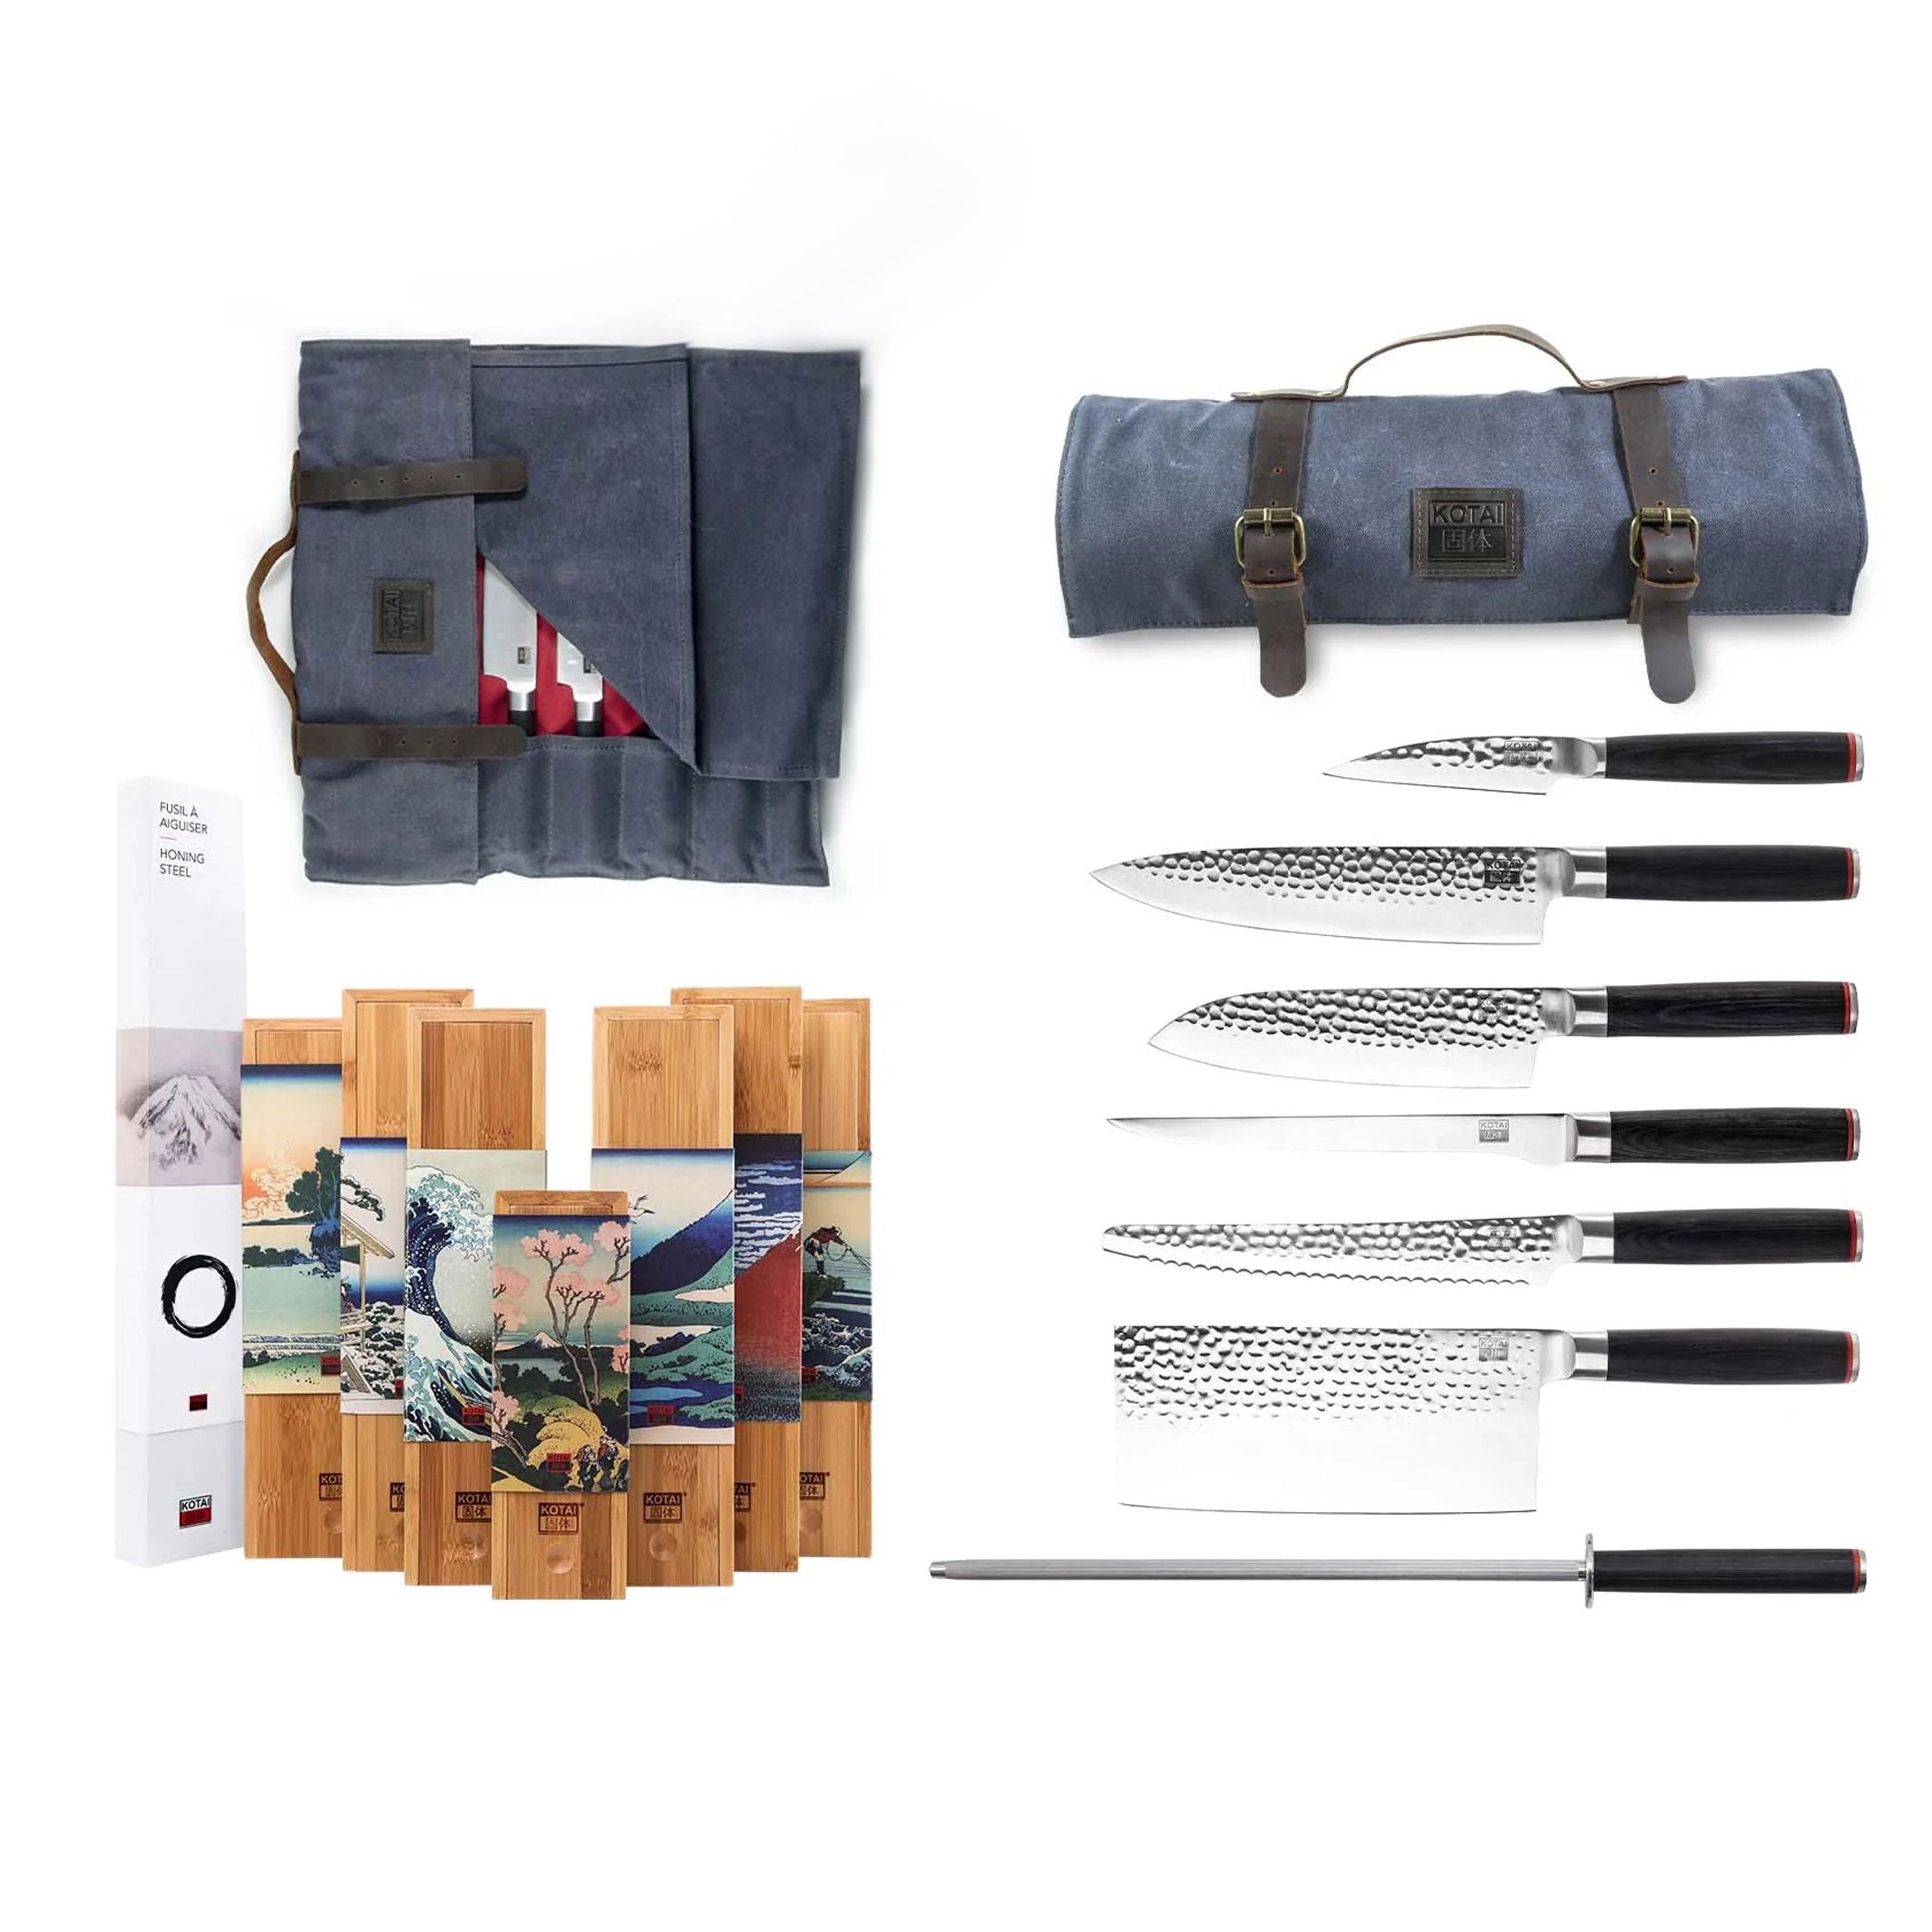 NOMAD KNIFE SET in BAG | Professional TRAVEL KNIFE SET |  6 knives, sharpening steel & bag | Kotai